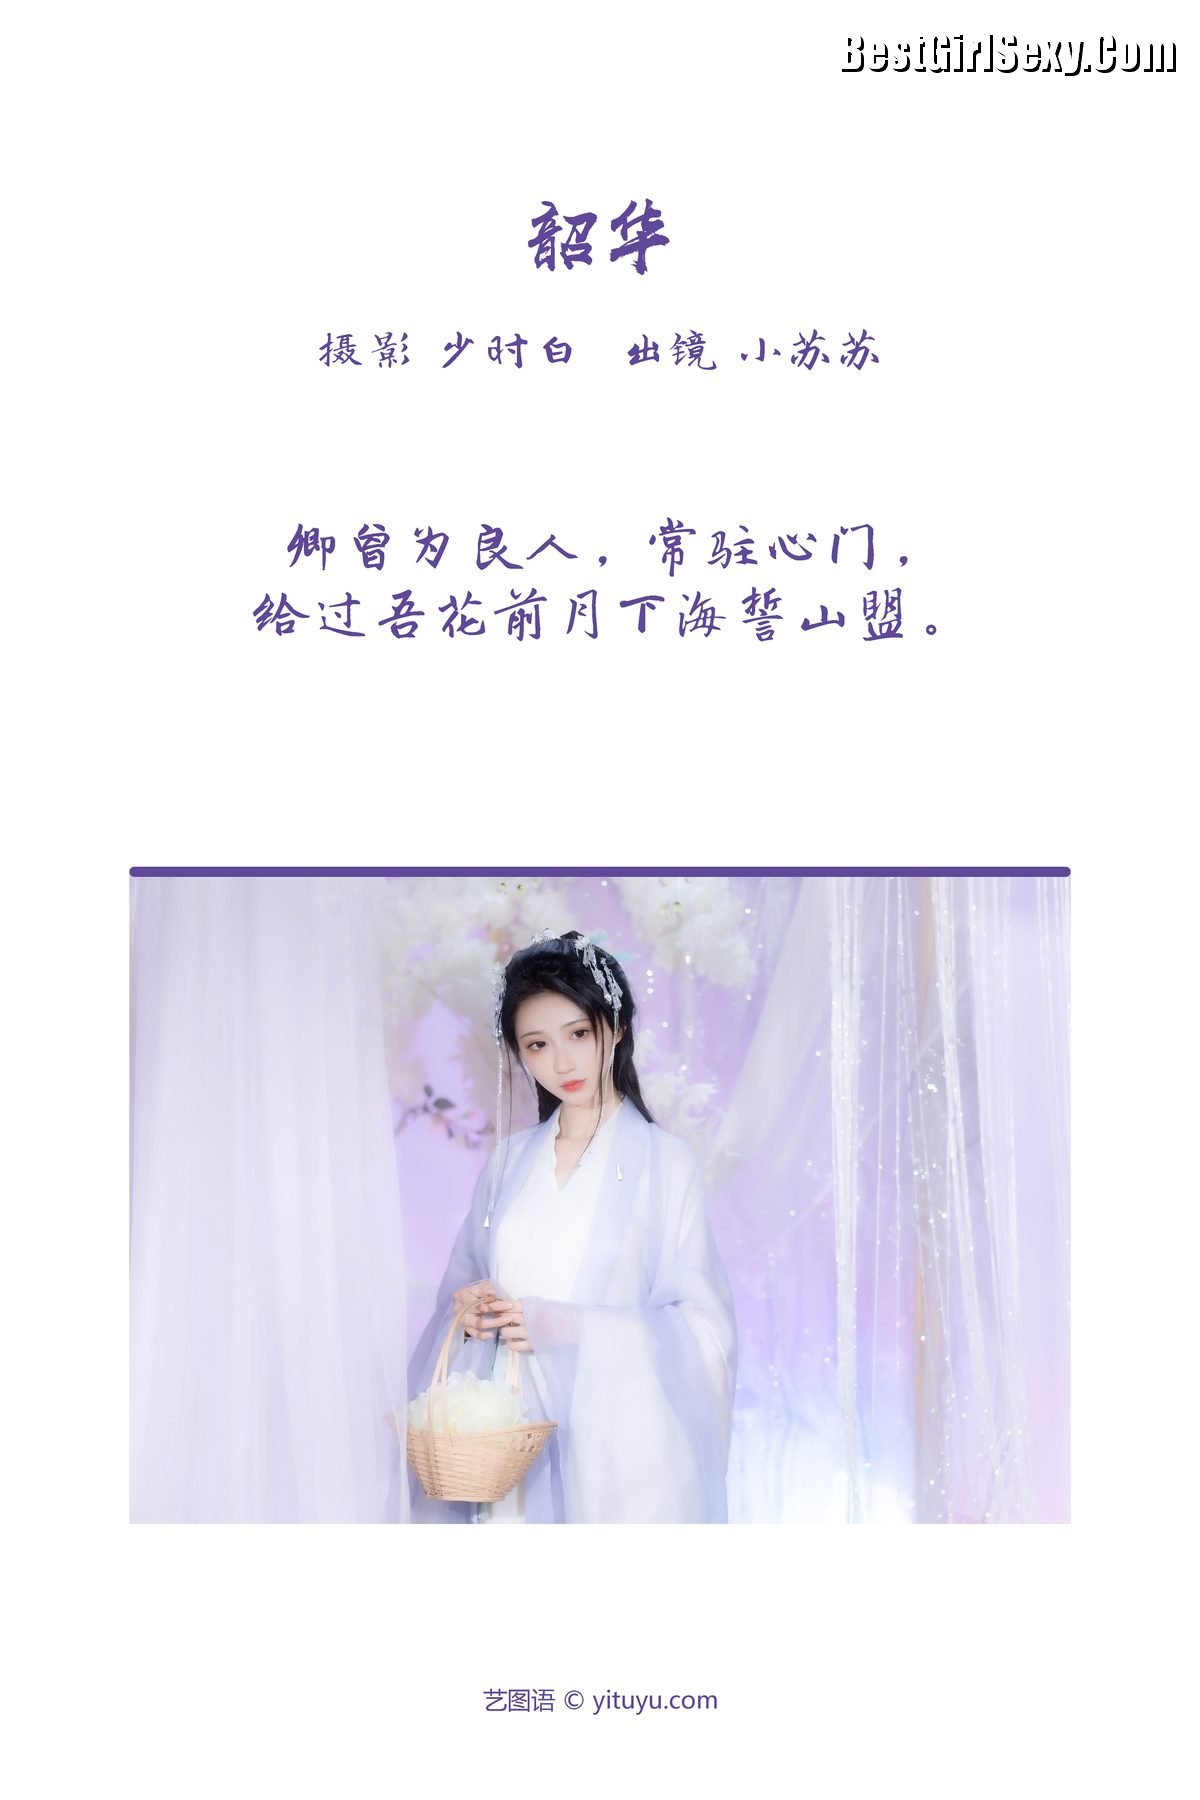 YiTuYu艺图语 Vol 3764 Qi Luo Sheng De Xiao Su Su 0001 8189176096.jpg